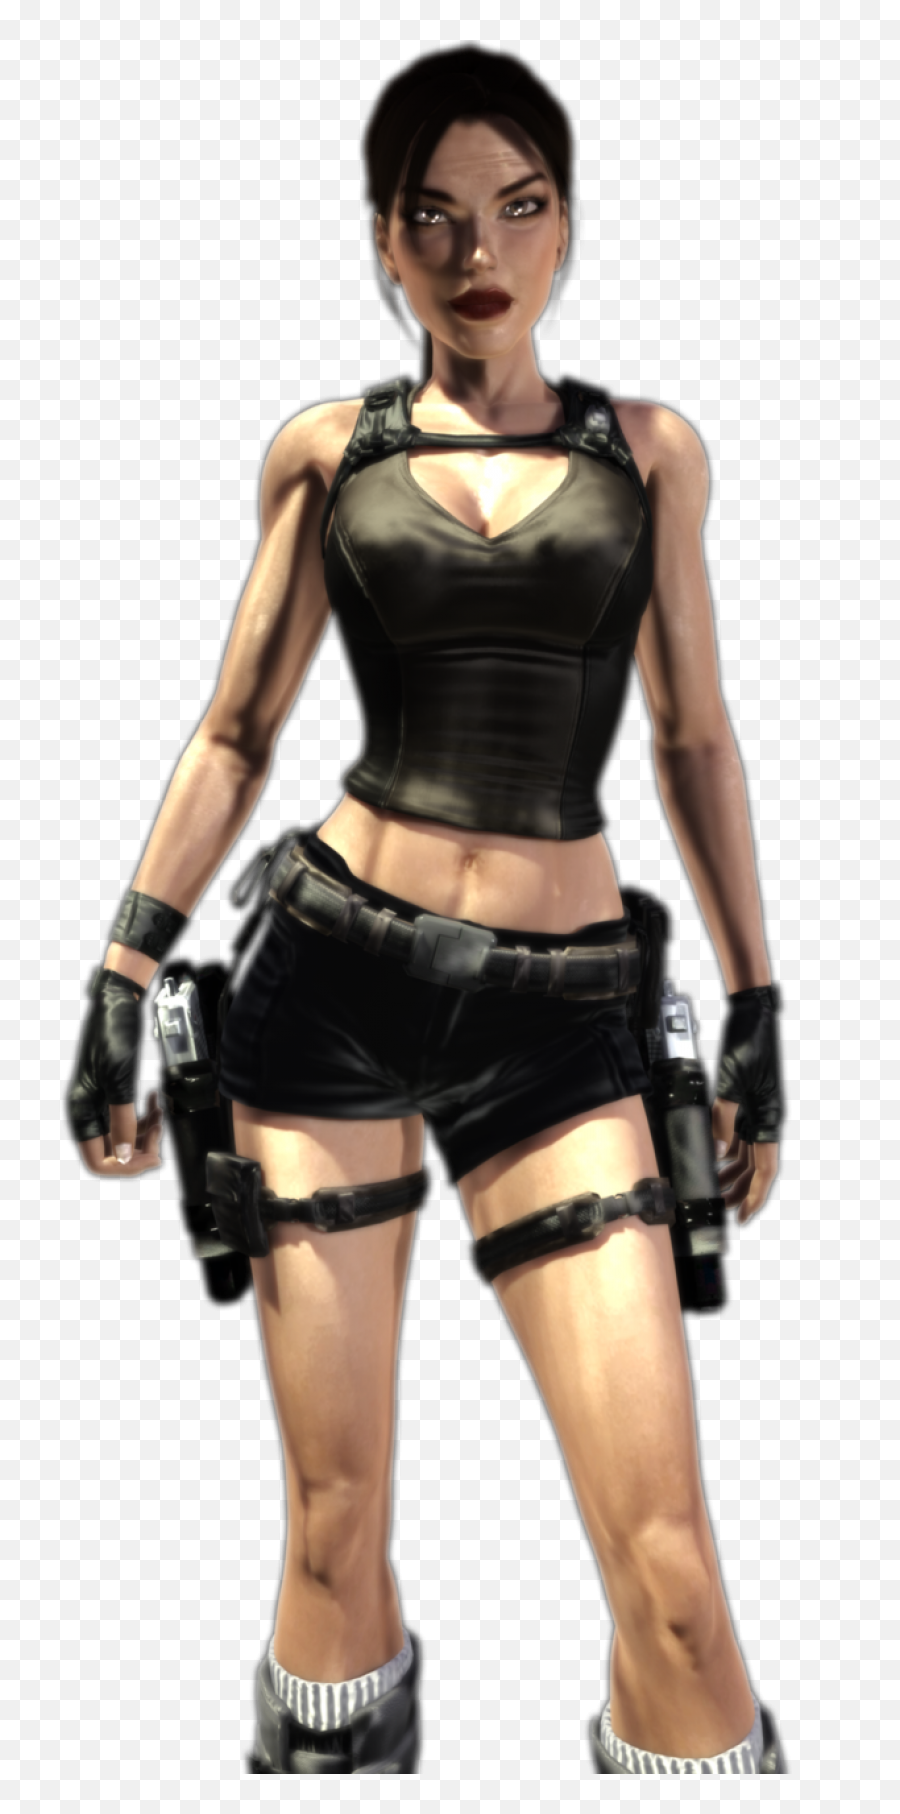 Lara Croft Png - Portable Network Graphics,Lara Croft Transparent